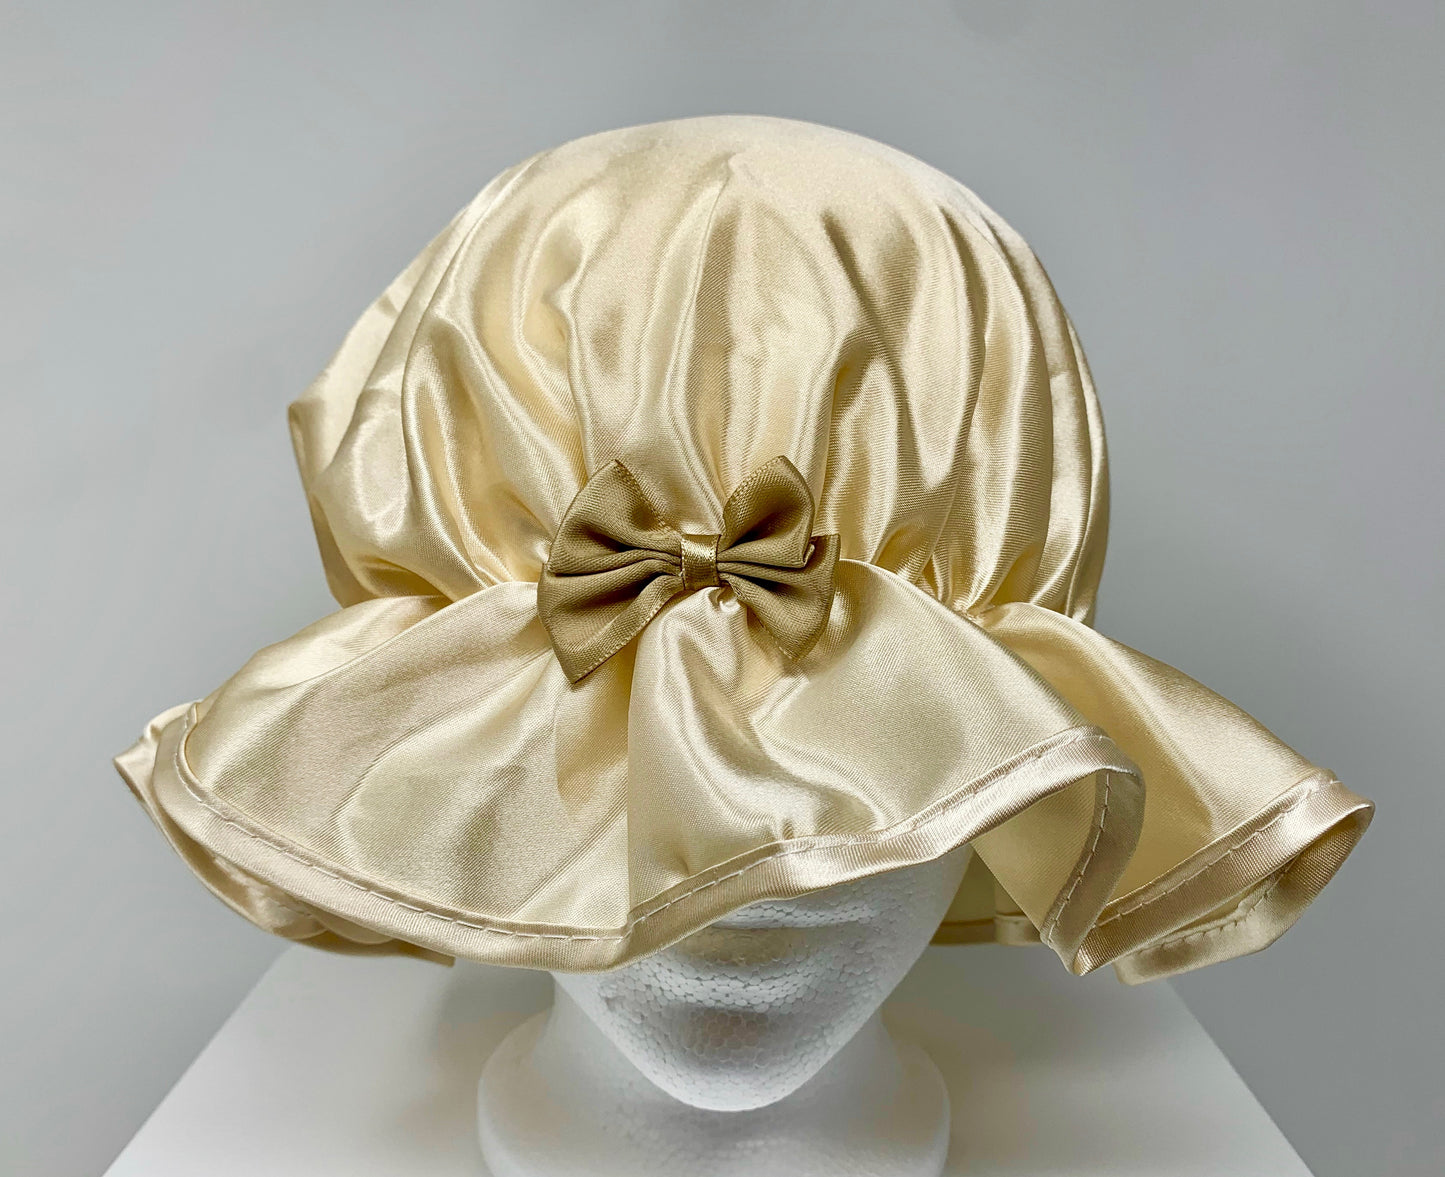 Kingsley Silky Satin Night Cap Sleeping Hats Sleep Bonnets Gold